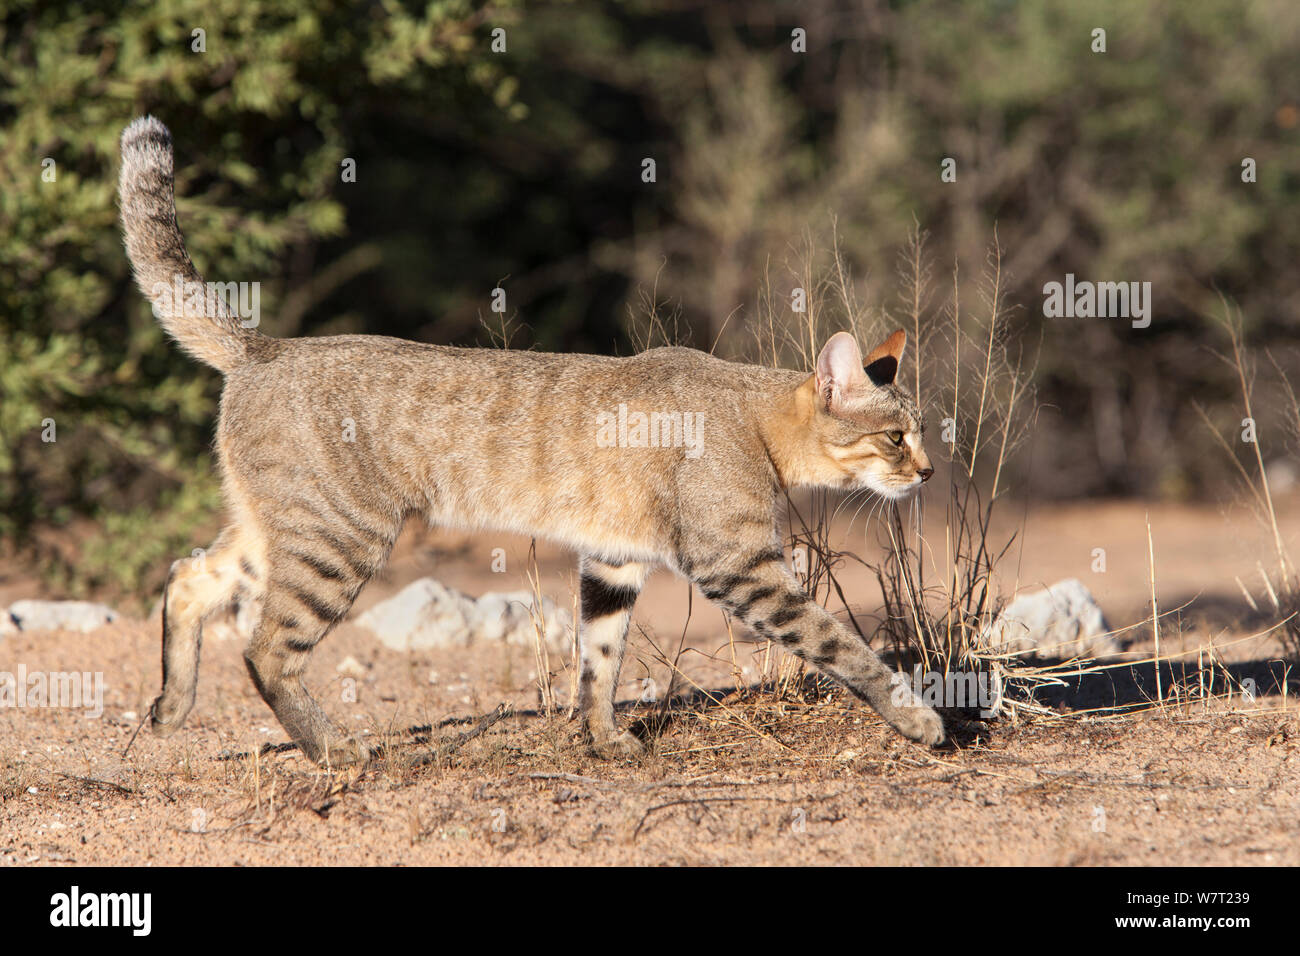 Gato Montés africano (Felis lybica), el Parque Transfronterizo Kgalagadi, Sudáfrica, en enero. Foto de stock